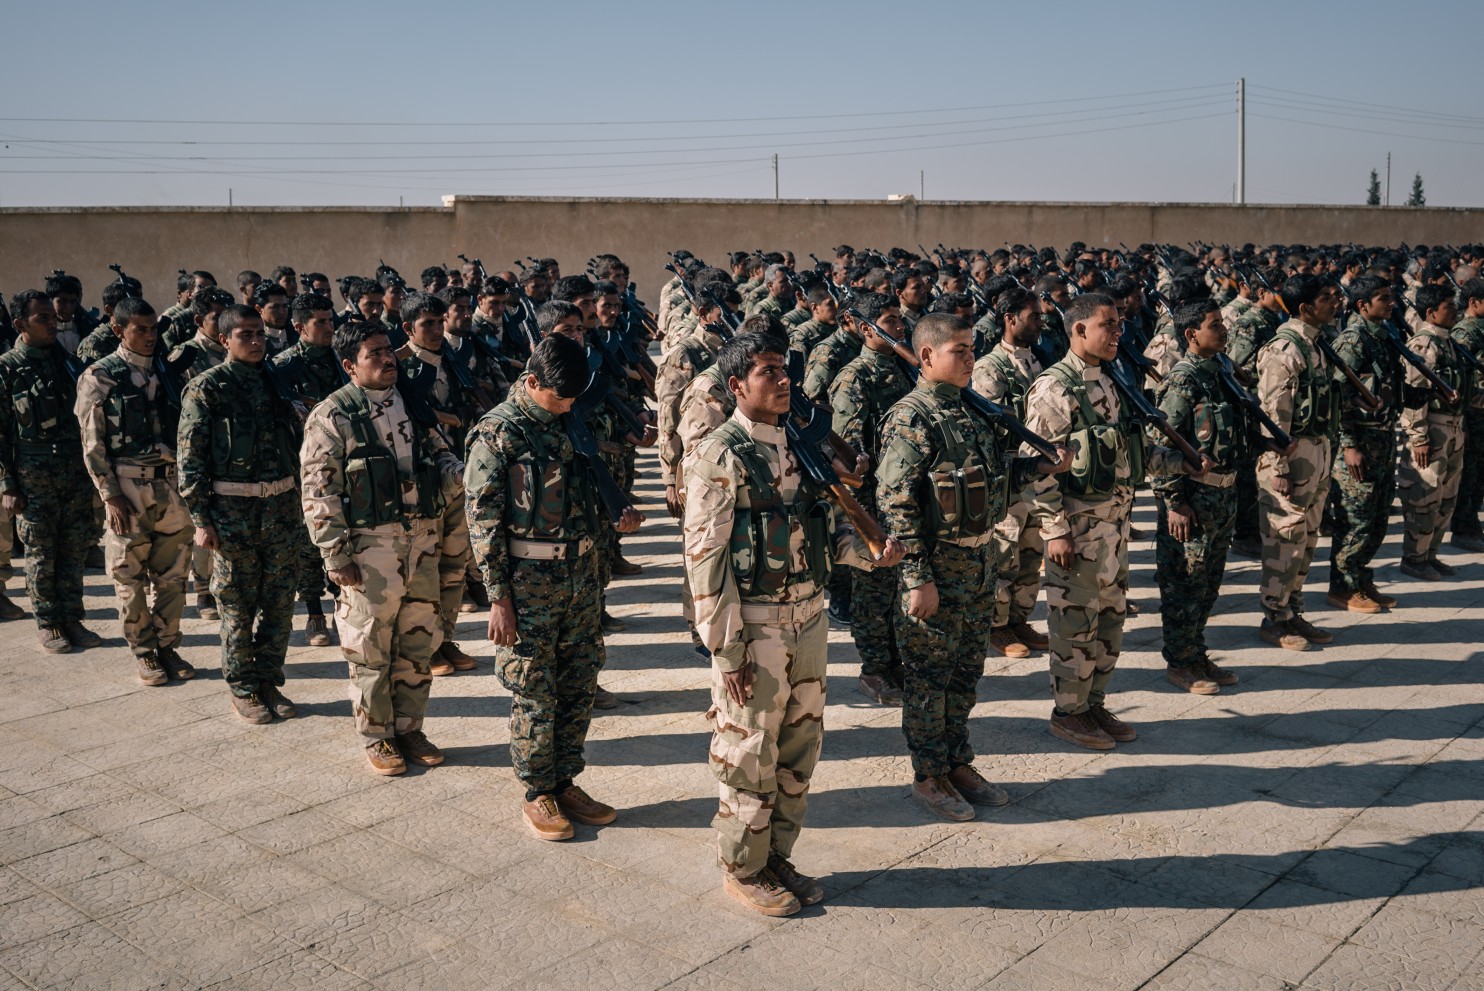 “تقرير لوشنطن بوست”: الميليشيات الكردية في شمال سوريا تستخدم المساعدات الامريكية لنشر ايديولوجيا اوجلان قبل التدريب العسكري